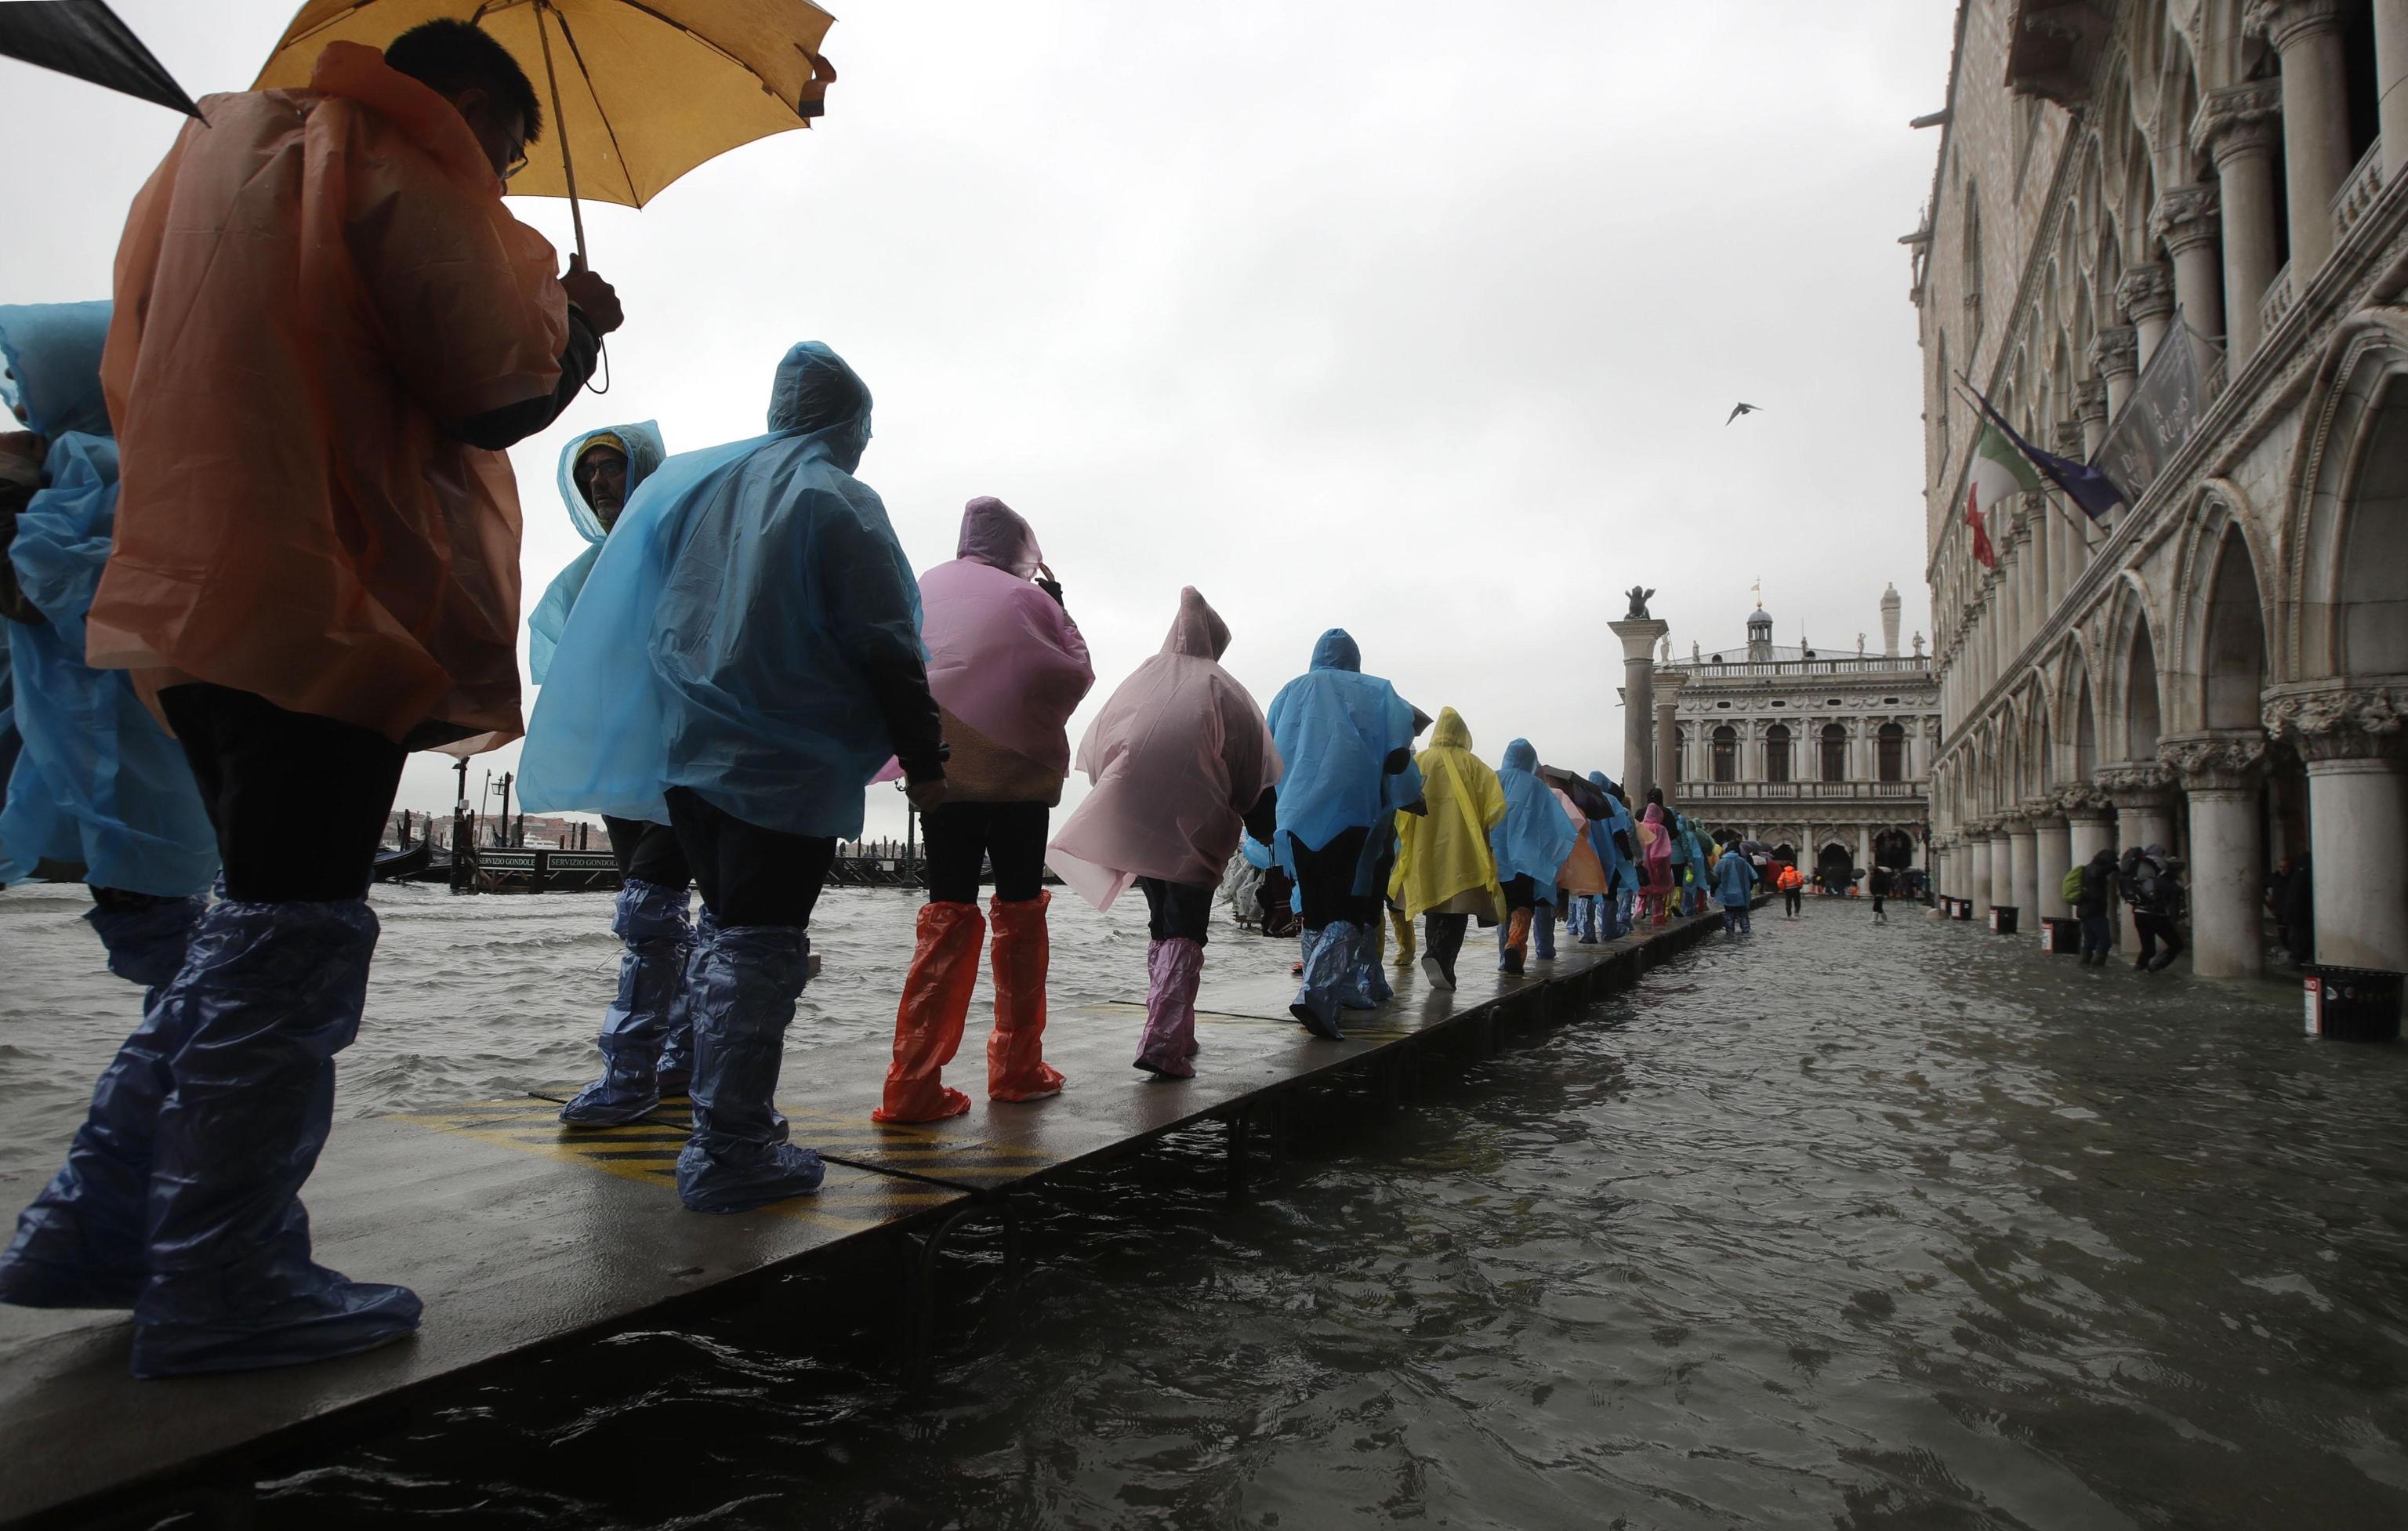 Alcune persone camminano sulle passerelle nel centro di Venezia